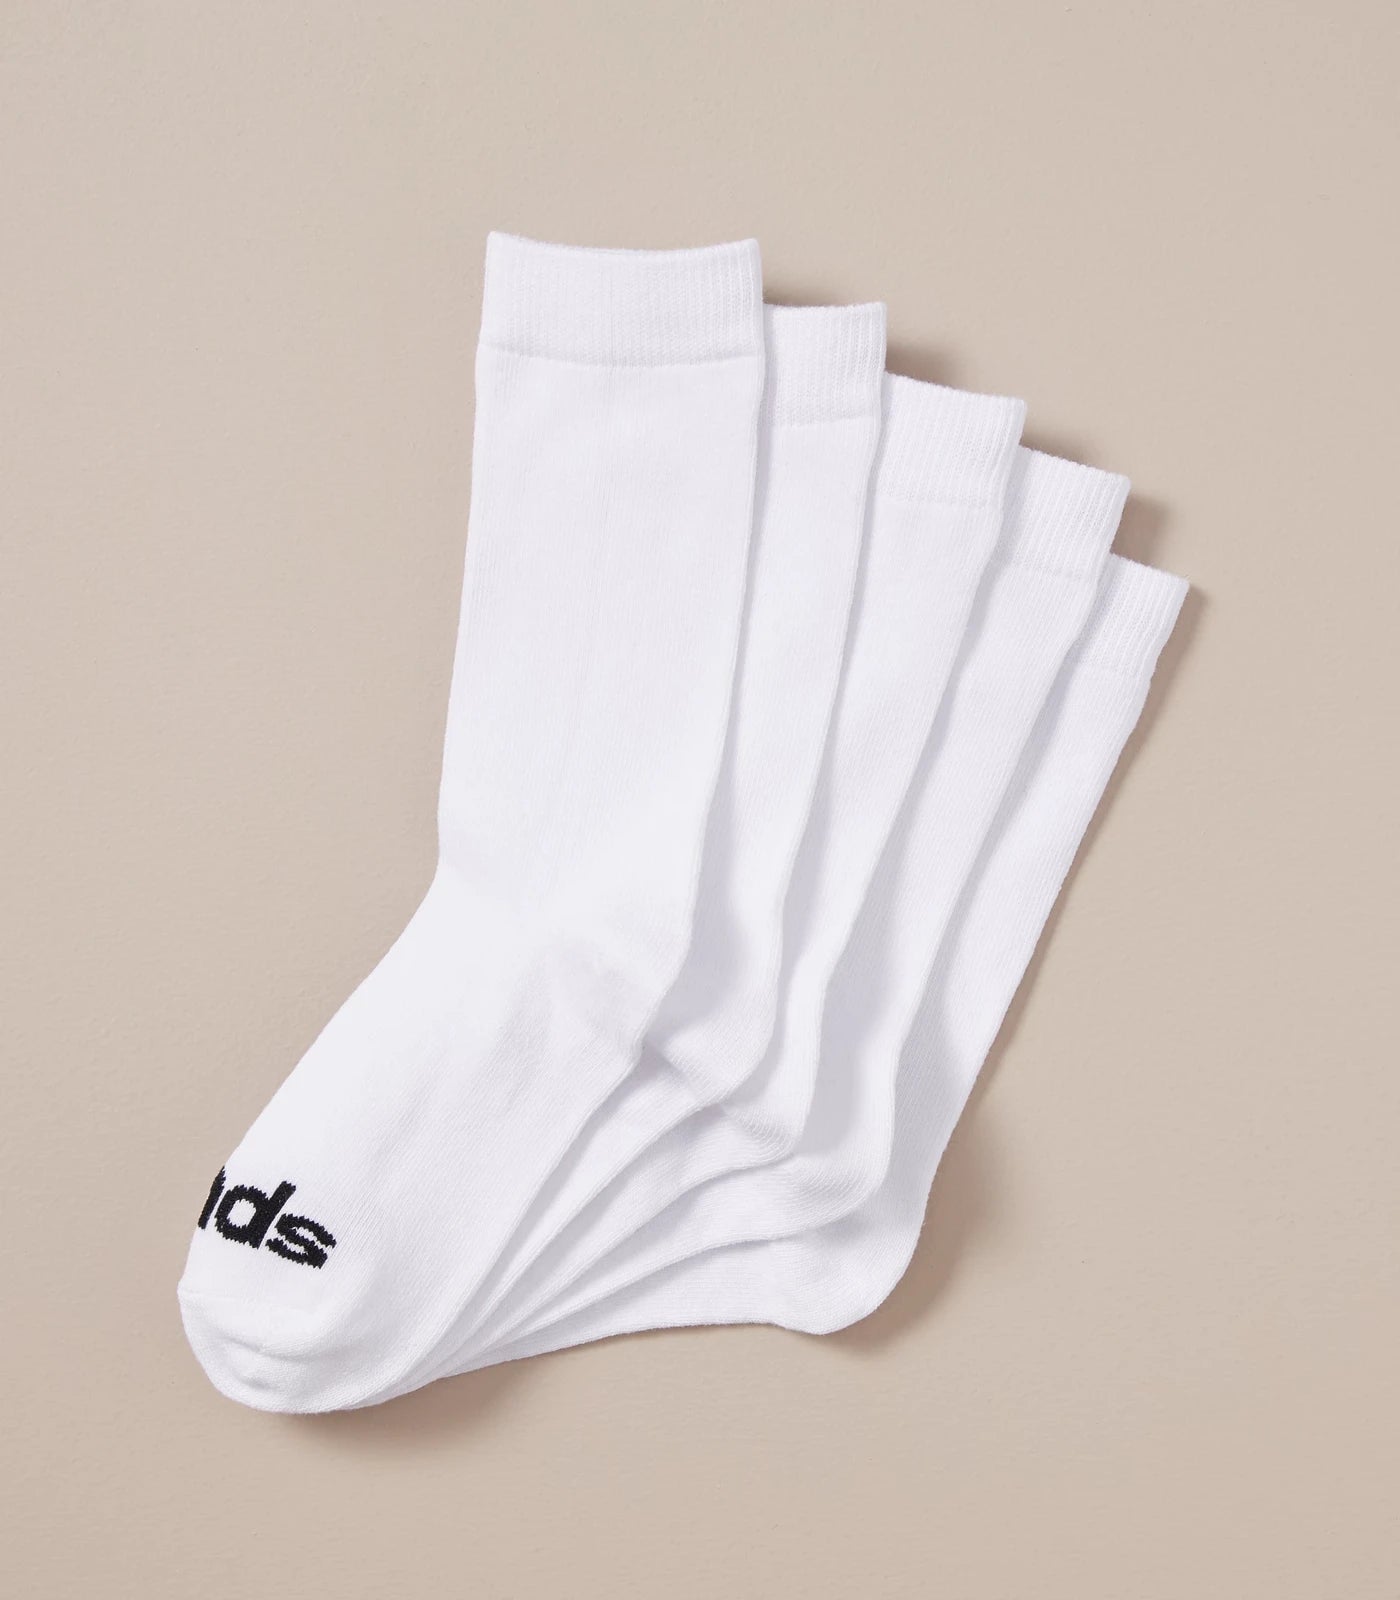 Bonds Kids Crew Socks 5 Pack - White